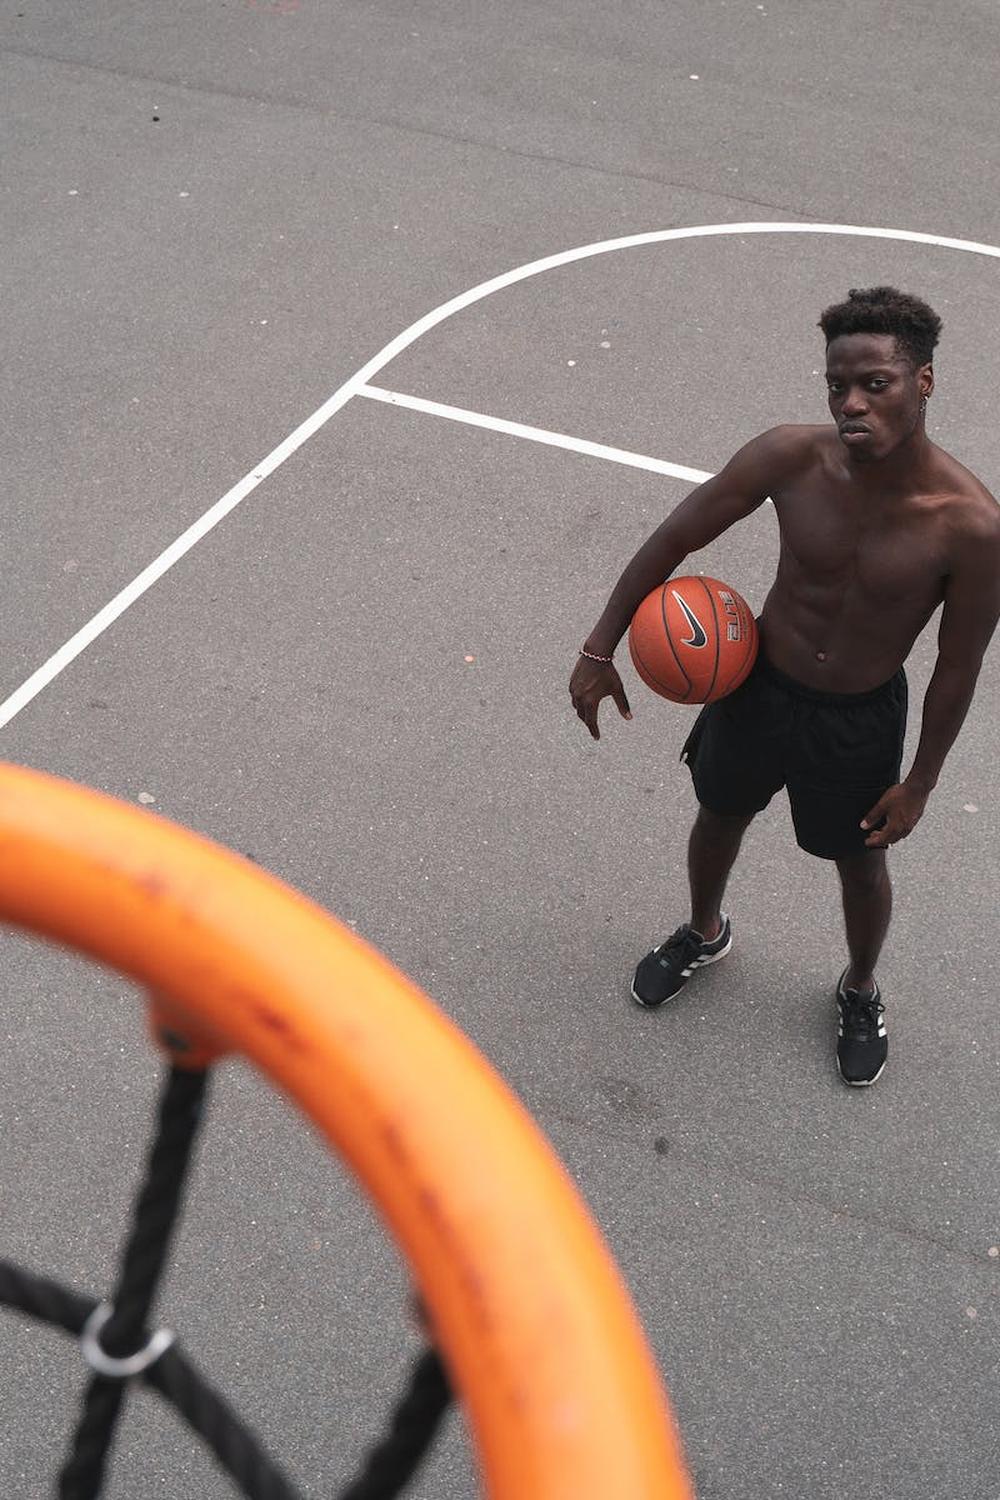 man_standing_near_basketball_hoop_holding_a_basket